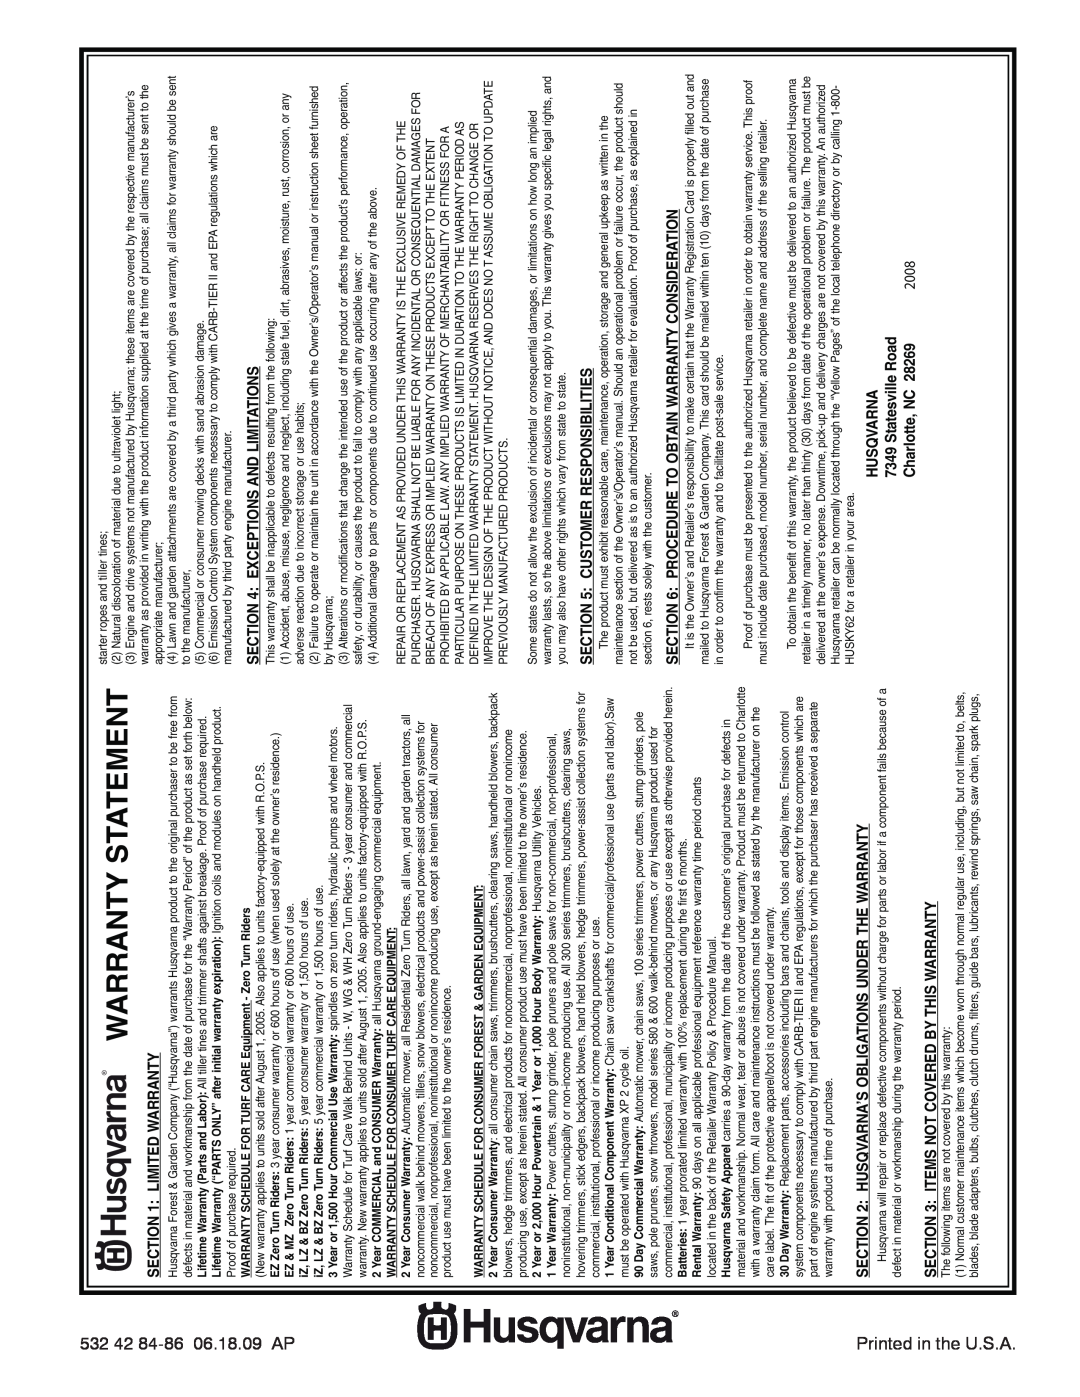 Husqvarna 15530SB-LS Warranty Statement, Limited Warranty, Husqvarna’S Obligations Under The Warranty, Statesville Road 